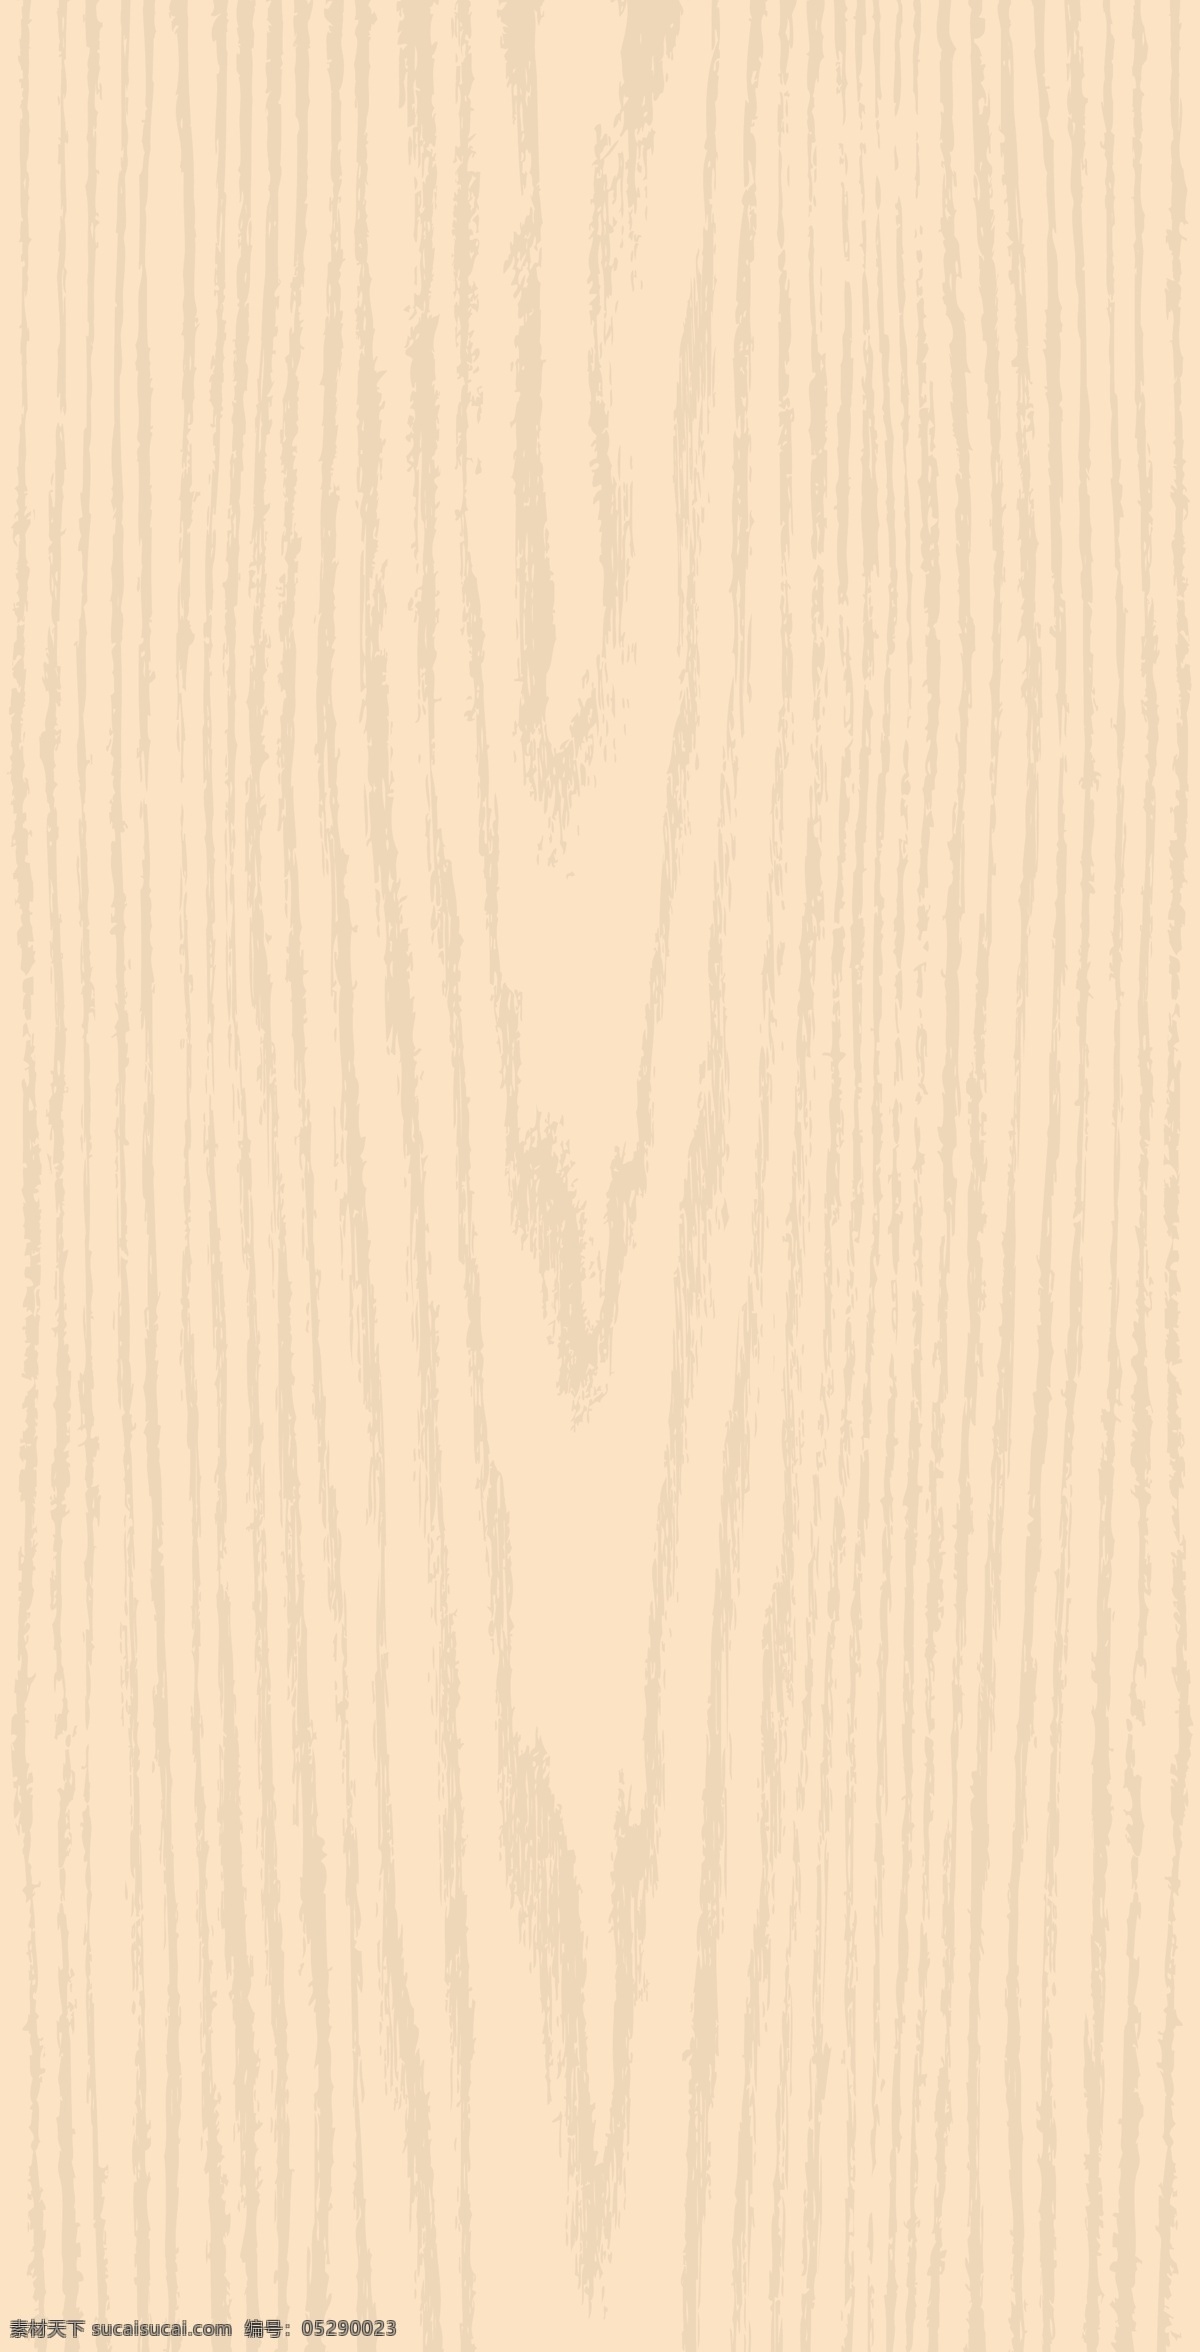 木头纹路 纹理图案 木纹理 纹路 背景 铅笔木 瓷砖纹 树轮纹 底图 底纹 树木 树皮 底纹边框 背景底纹